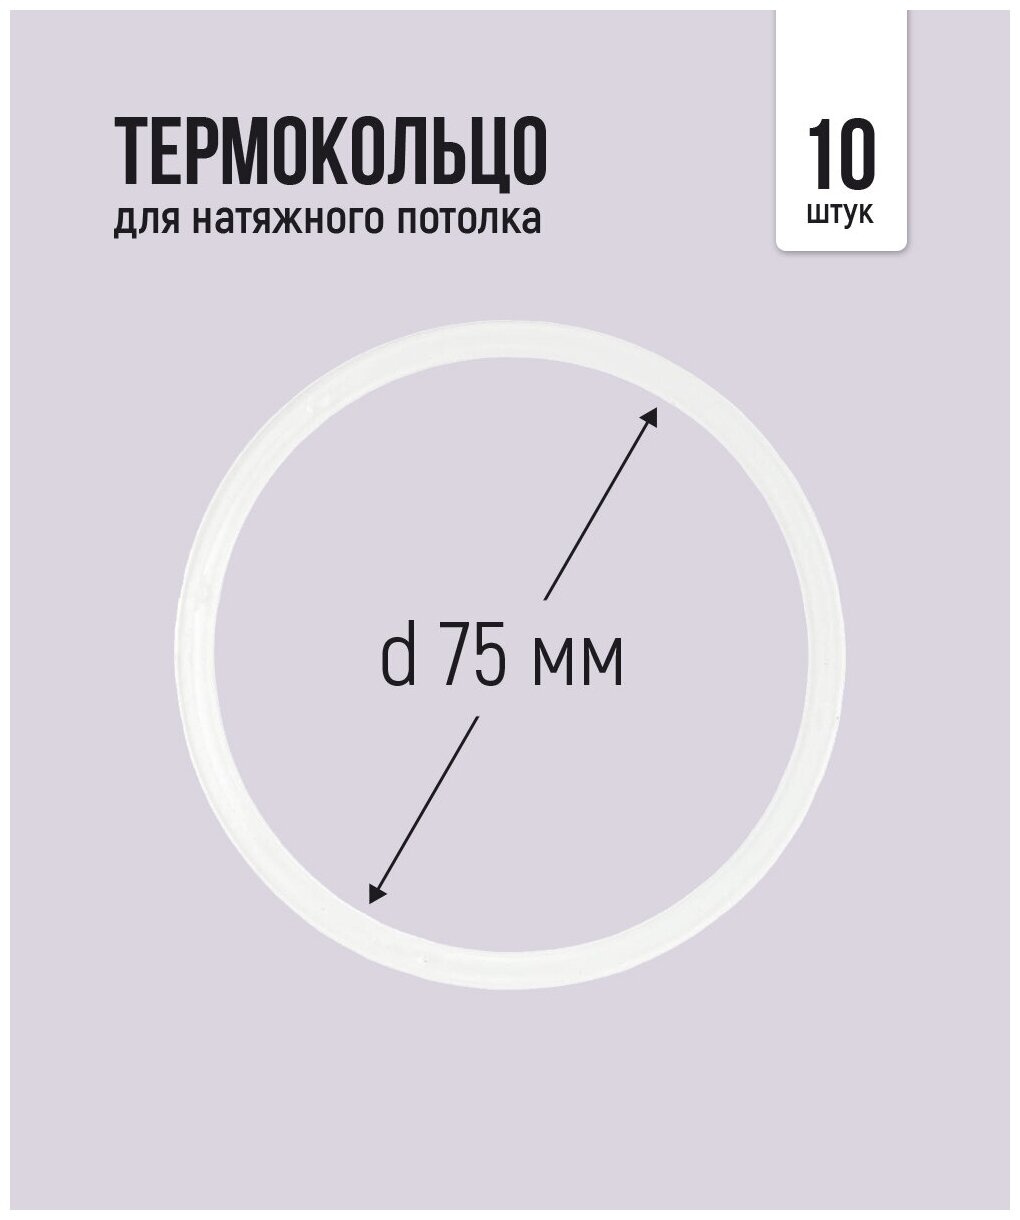 Термокольцо для натяжного потолка d 75 мм, 10 шт